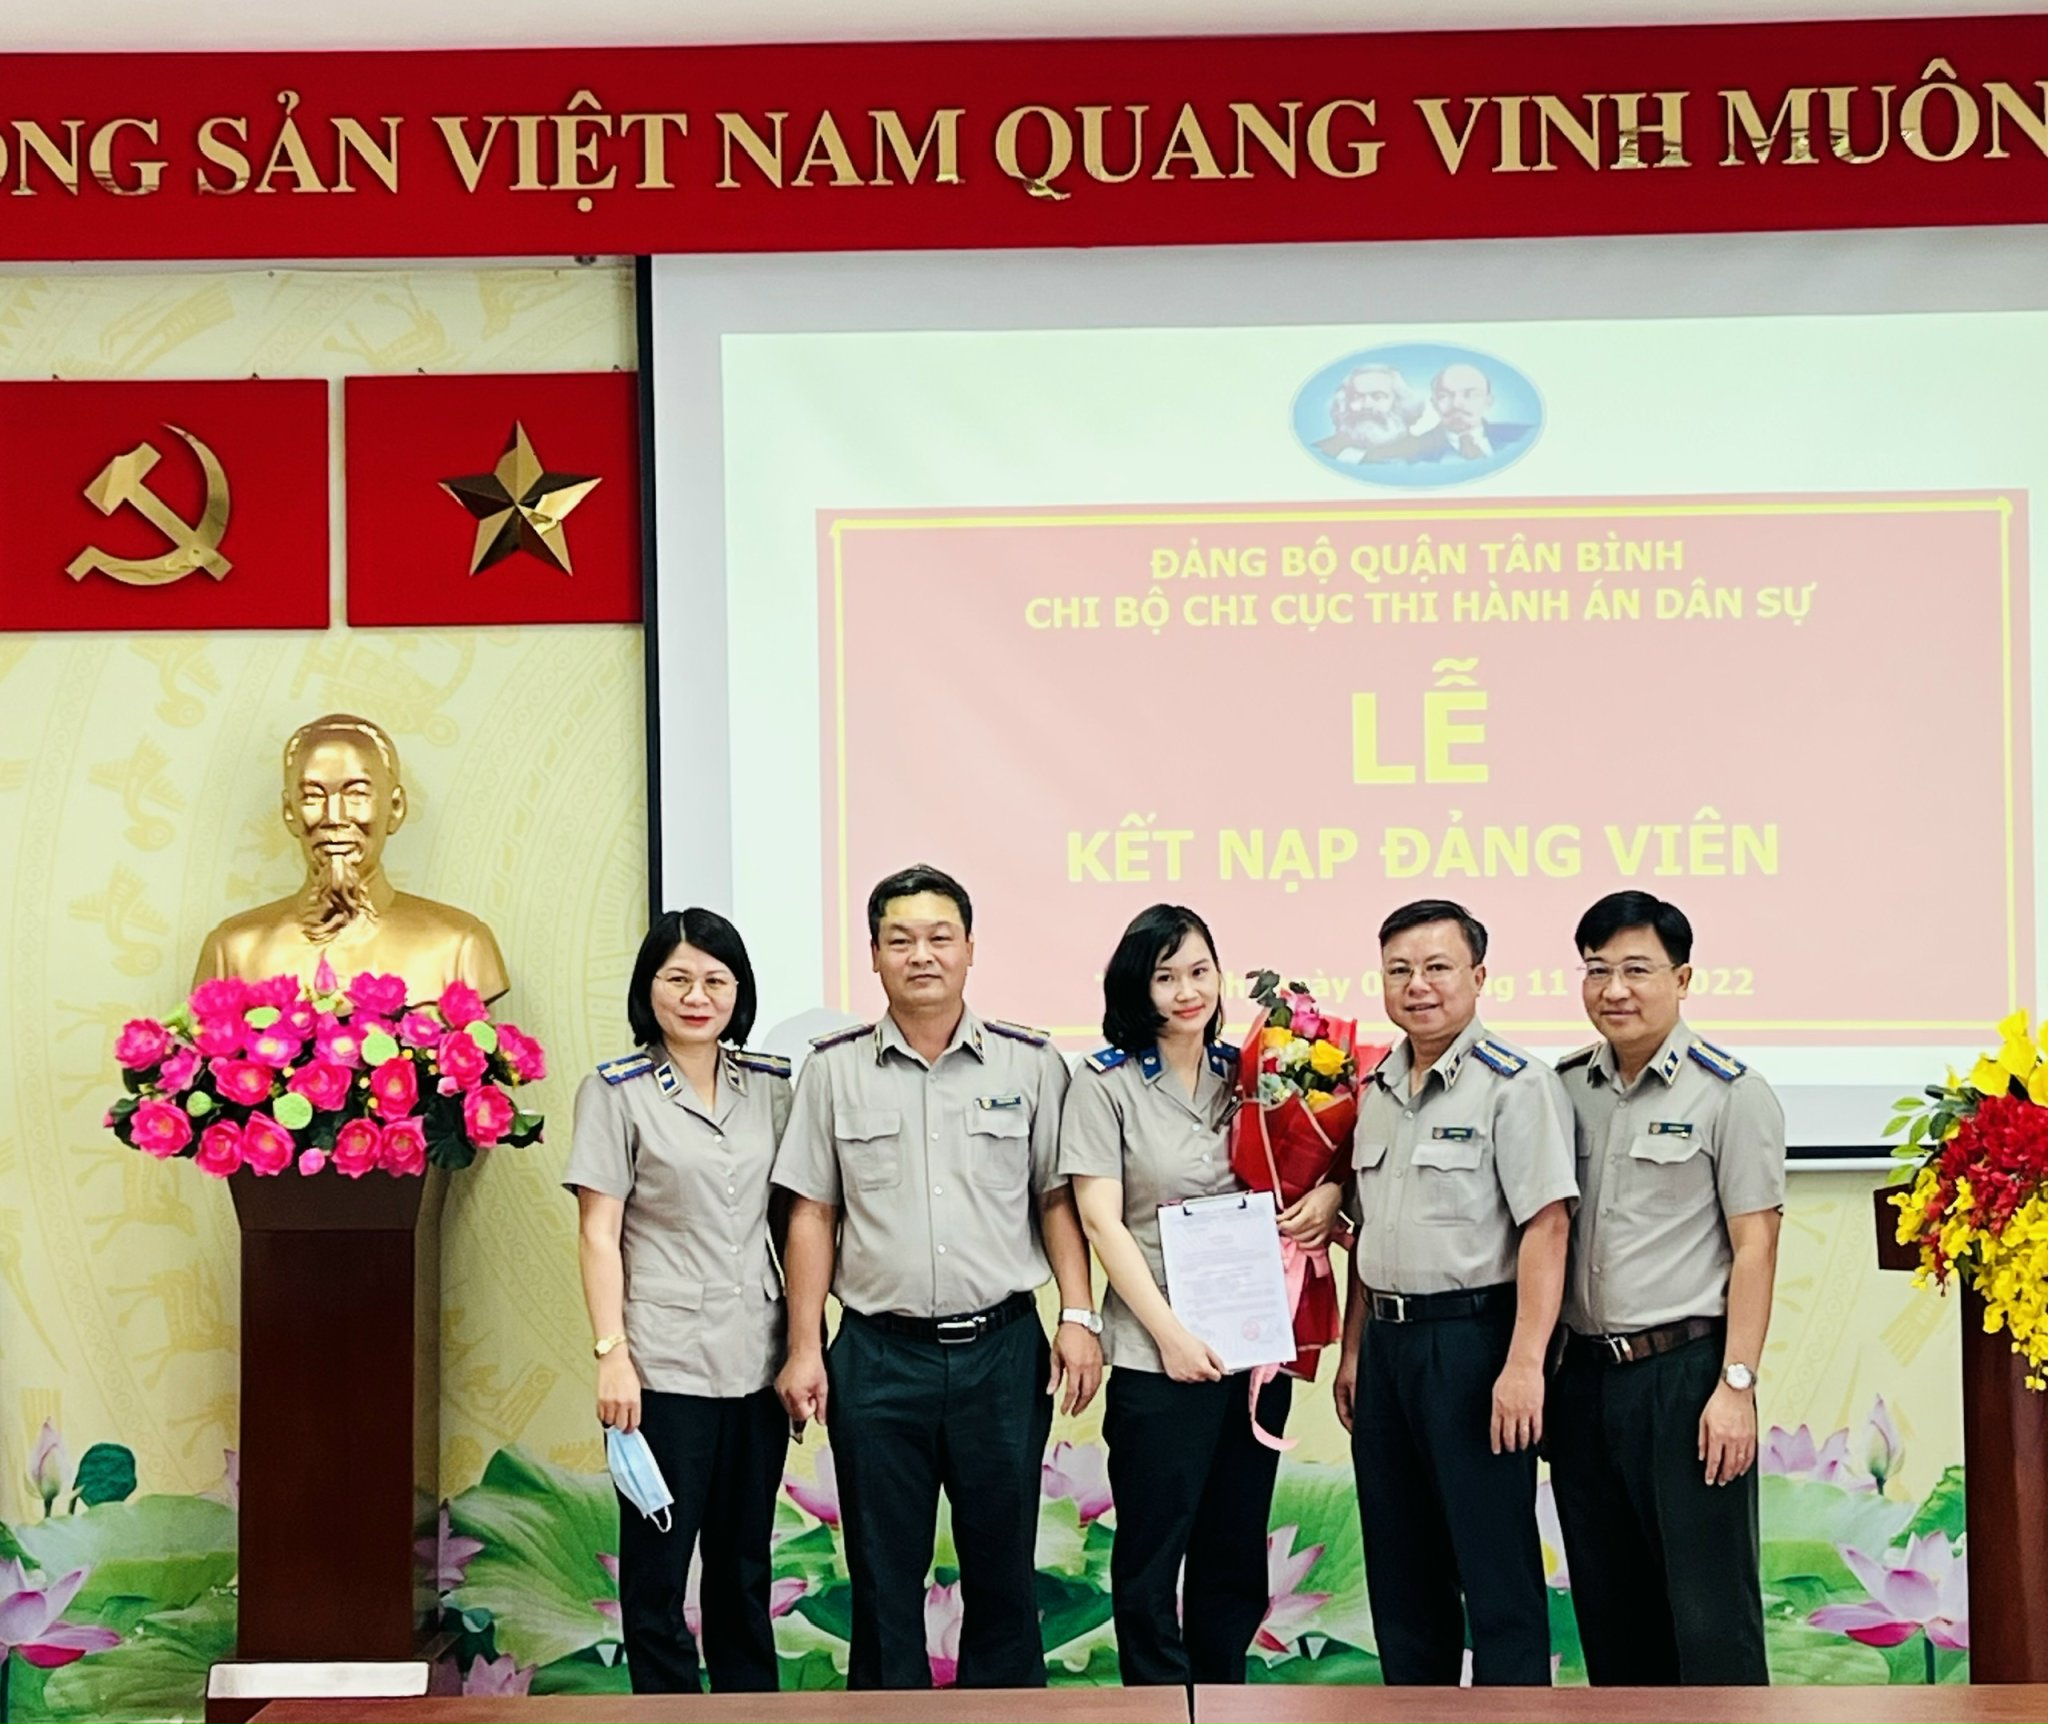 Chi cục Thi hành án dân sự quận Tân Bình: đoàn kết, nỗ lực hoàn thành các chỉ tiêu, nhiệm vụ được giao năm 2023